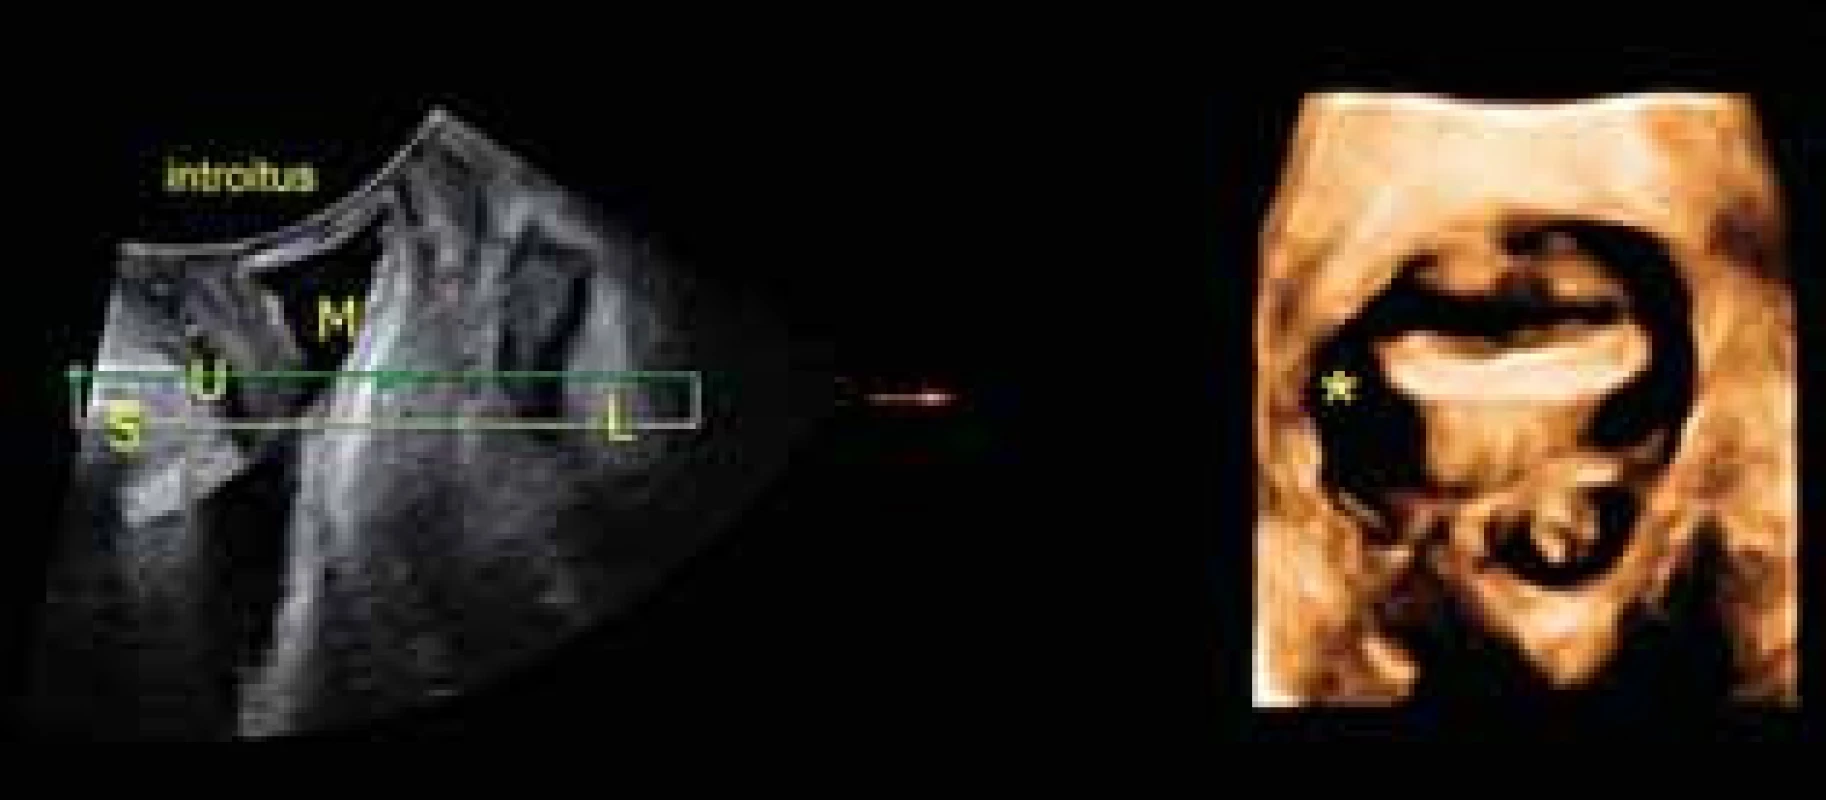 4D ultrazvukové vyšetření prolapsu: Levá část: Sagitální řez S – symfýza, L – levator, U – uretra, M měchýř. Pravá část: axiální řez levatorového hiatu s pravostrannou avulzí levatoru označena hvezdičkou